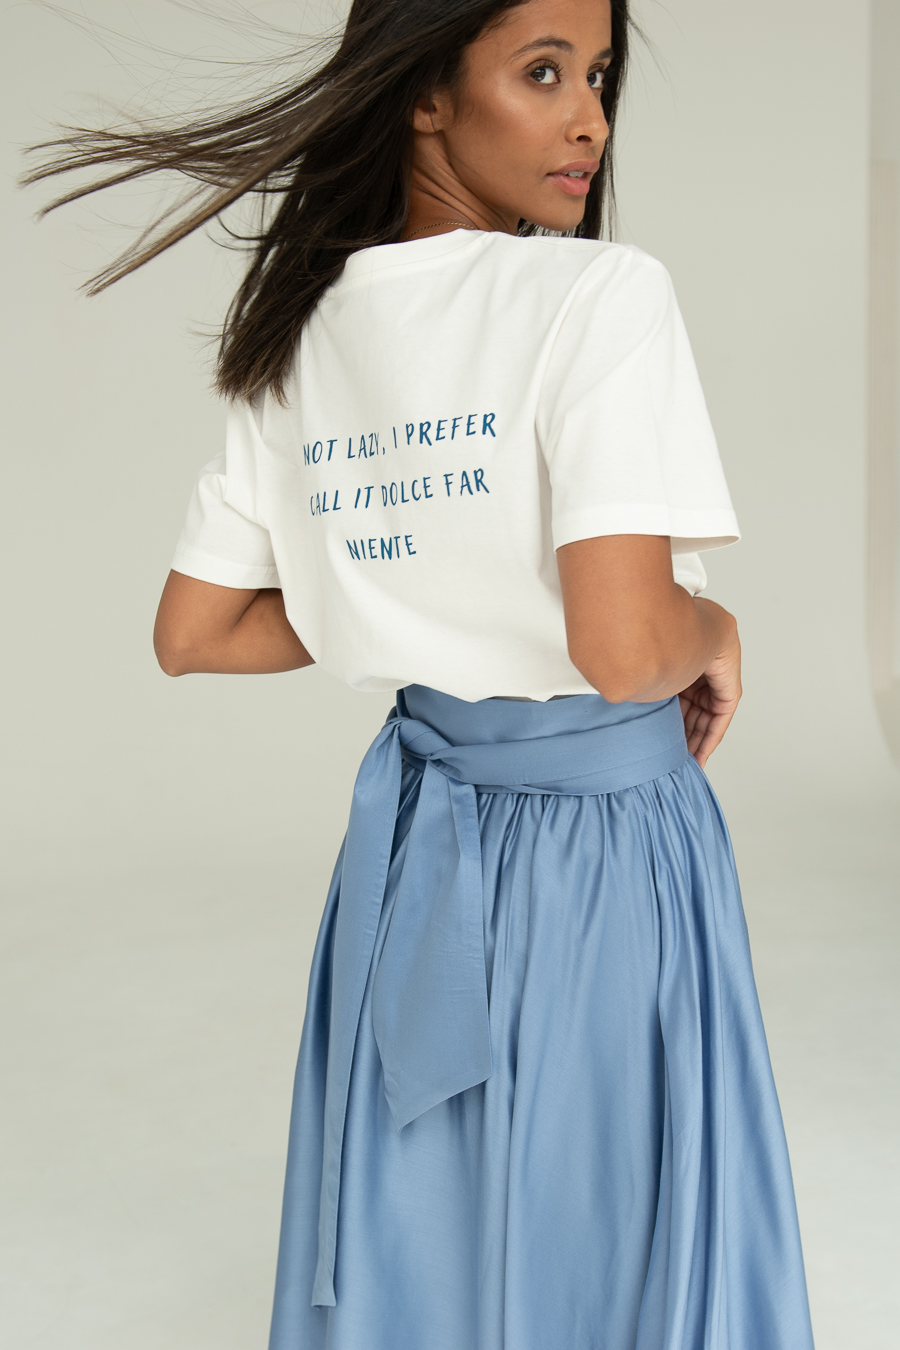 błękitna spódnica Nebbia azzurra i t-shirt z napisem Dolce far niente